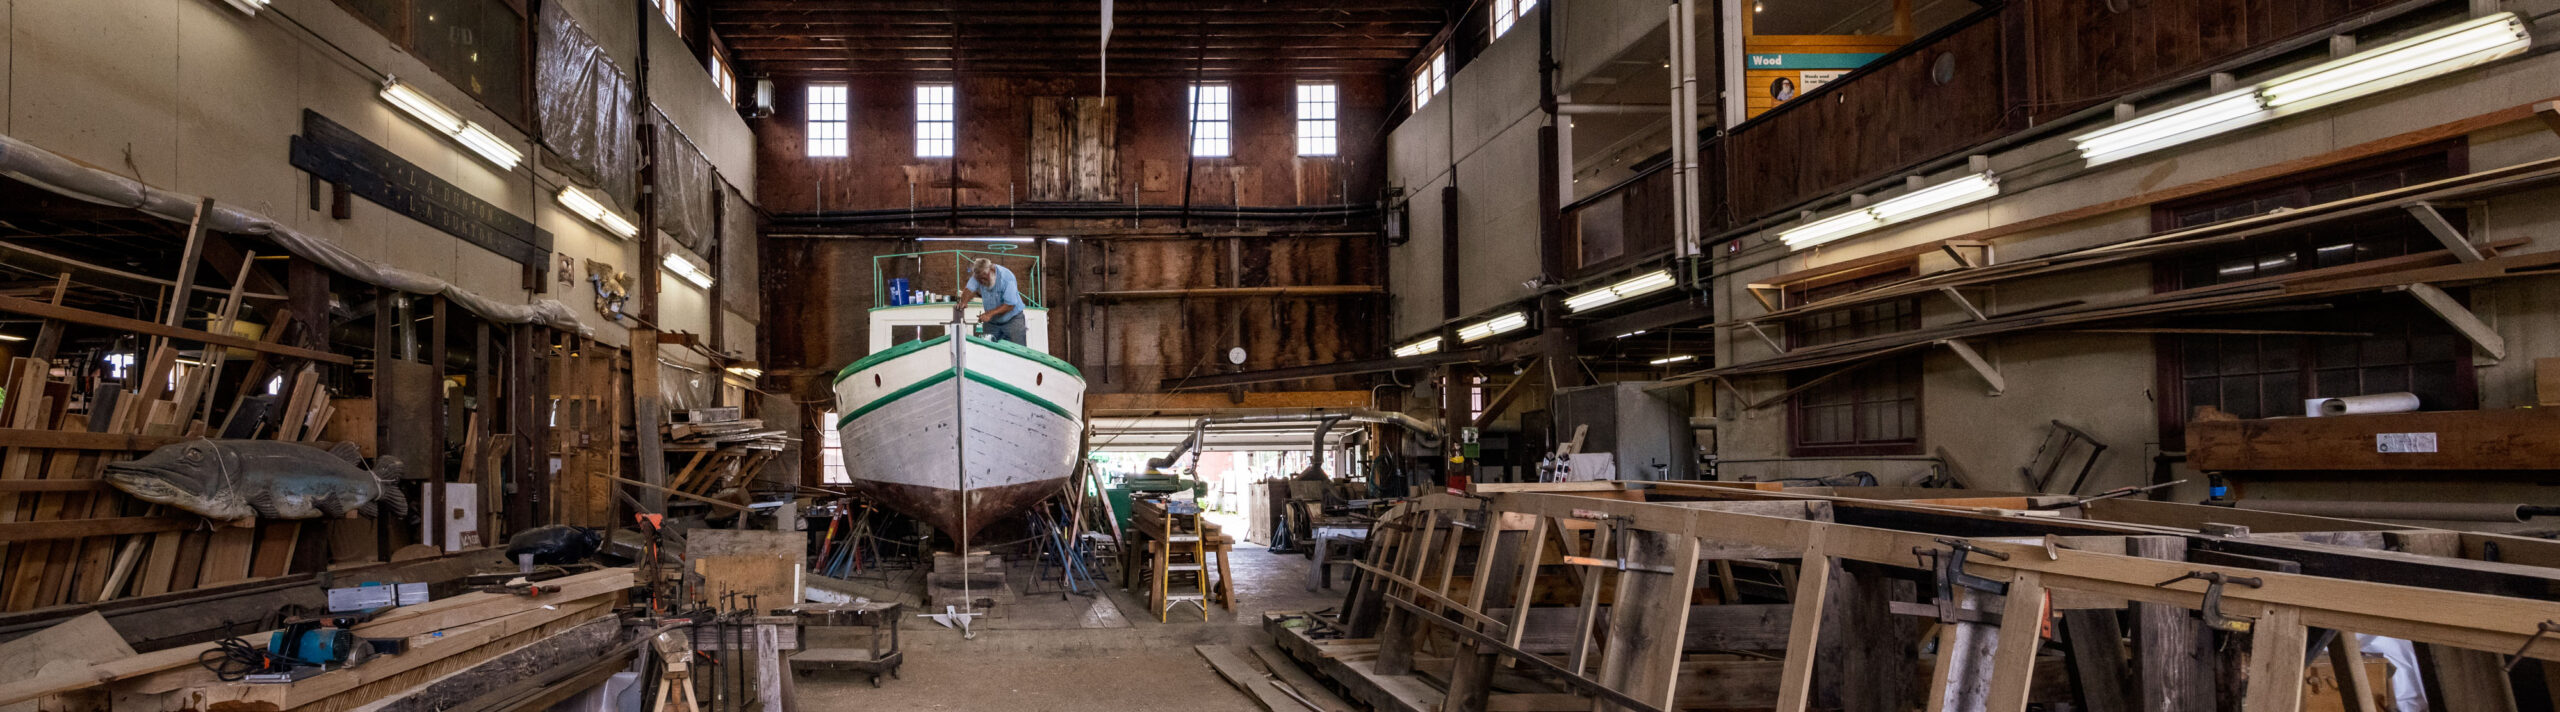 inside wooden boat shipyard